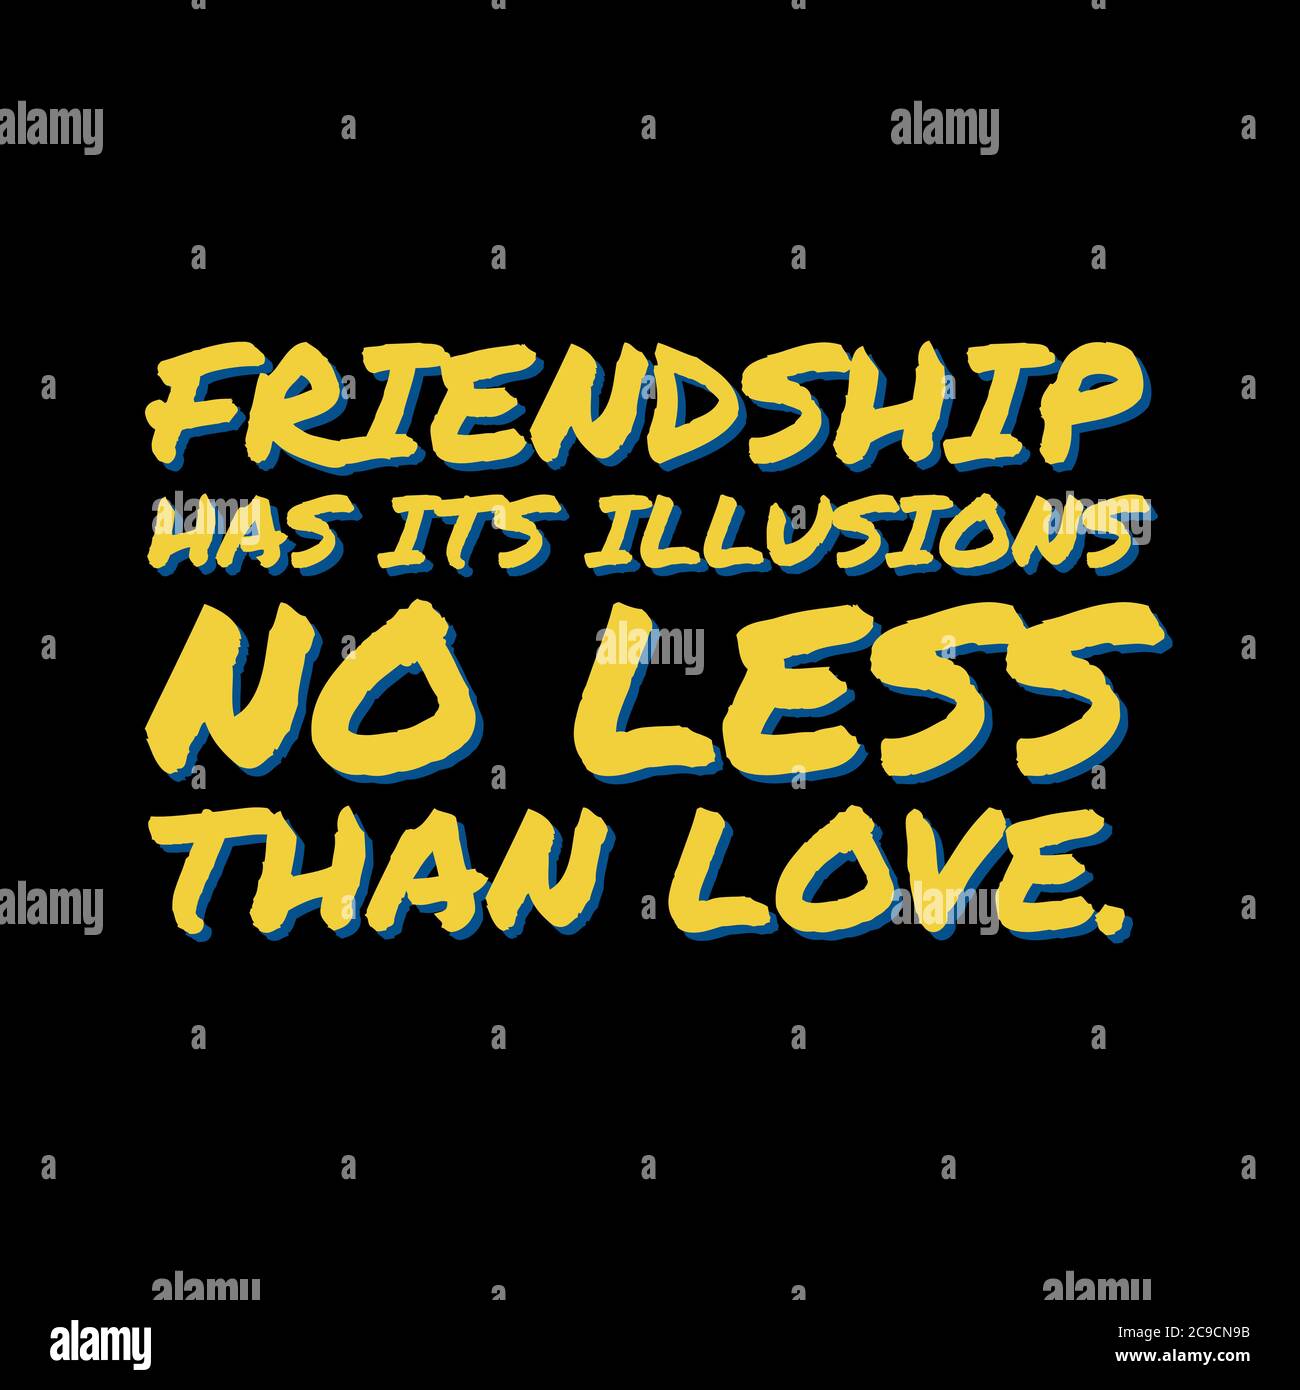 Freundschaft hat ihre Illusionen nicht lsss als Liebe Illustration. Freundschaft Tag Zitat Rendering. Stockfoto